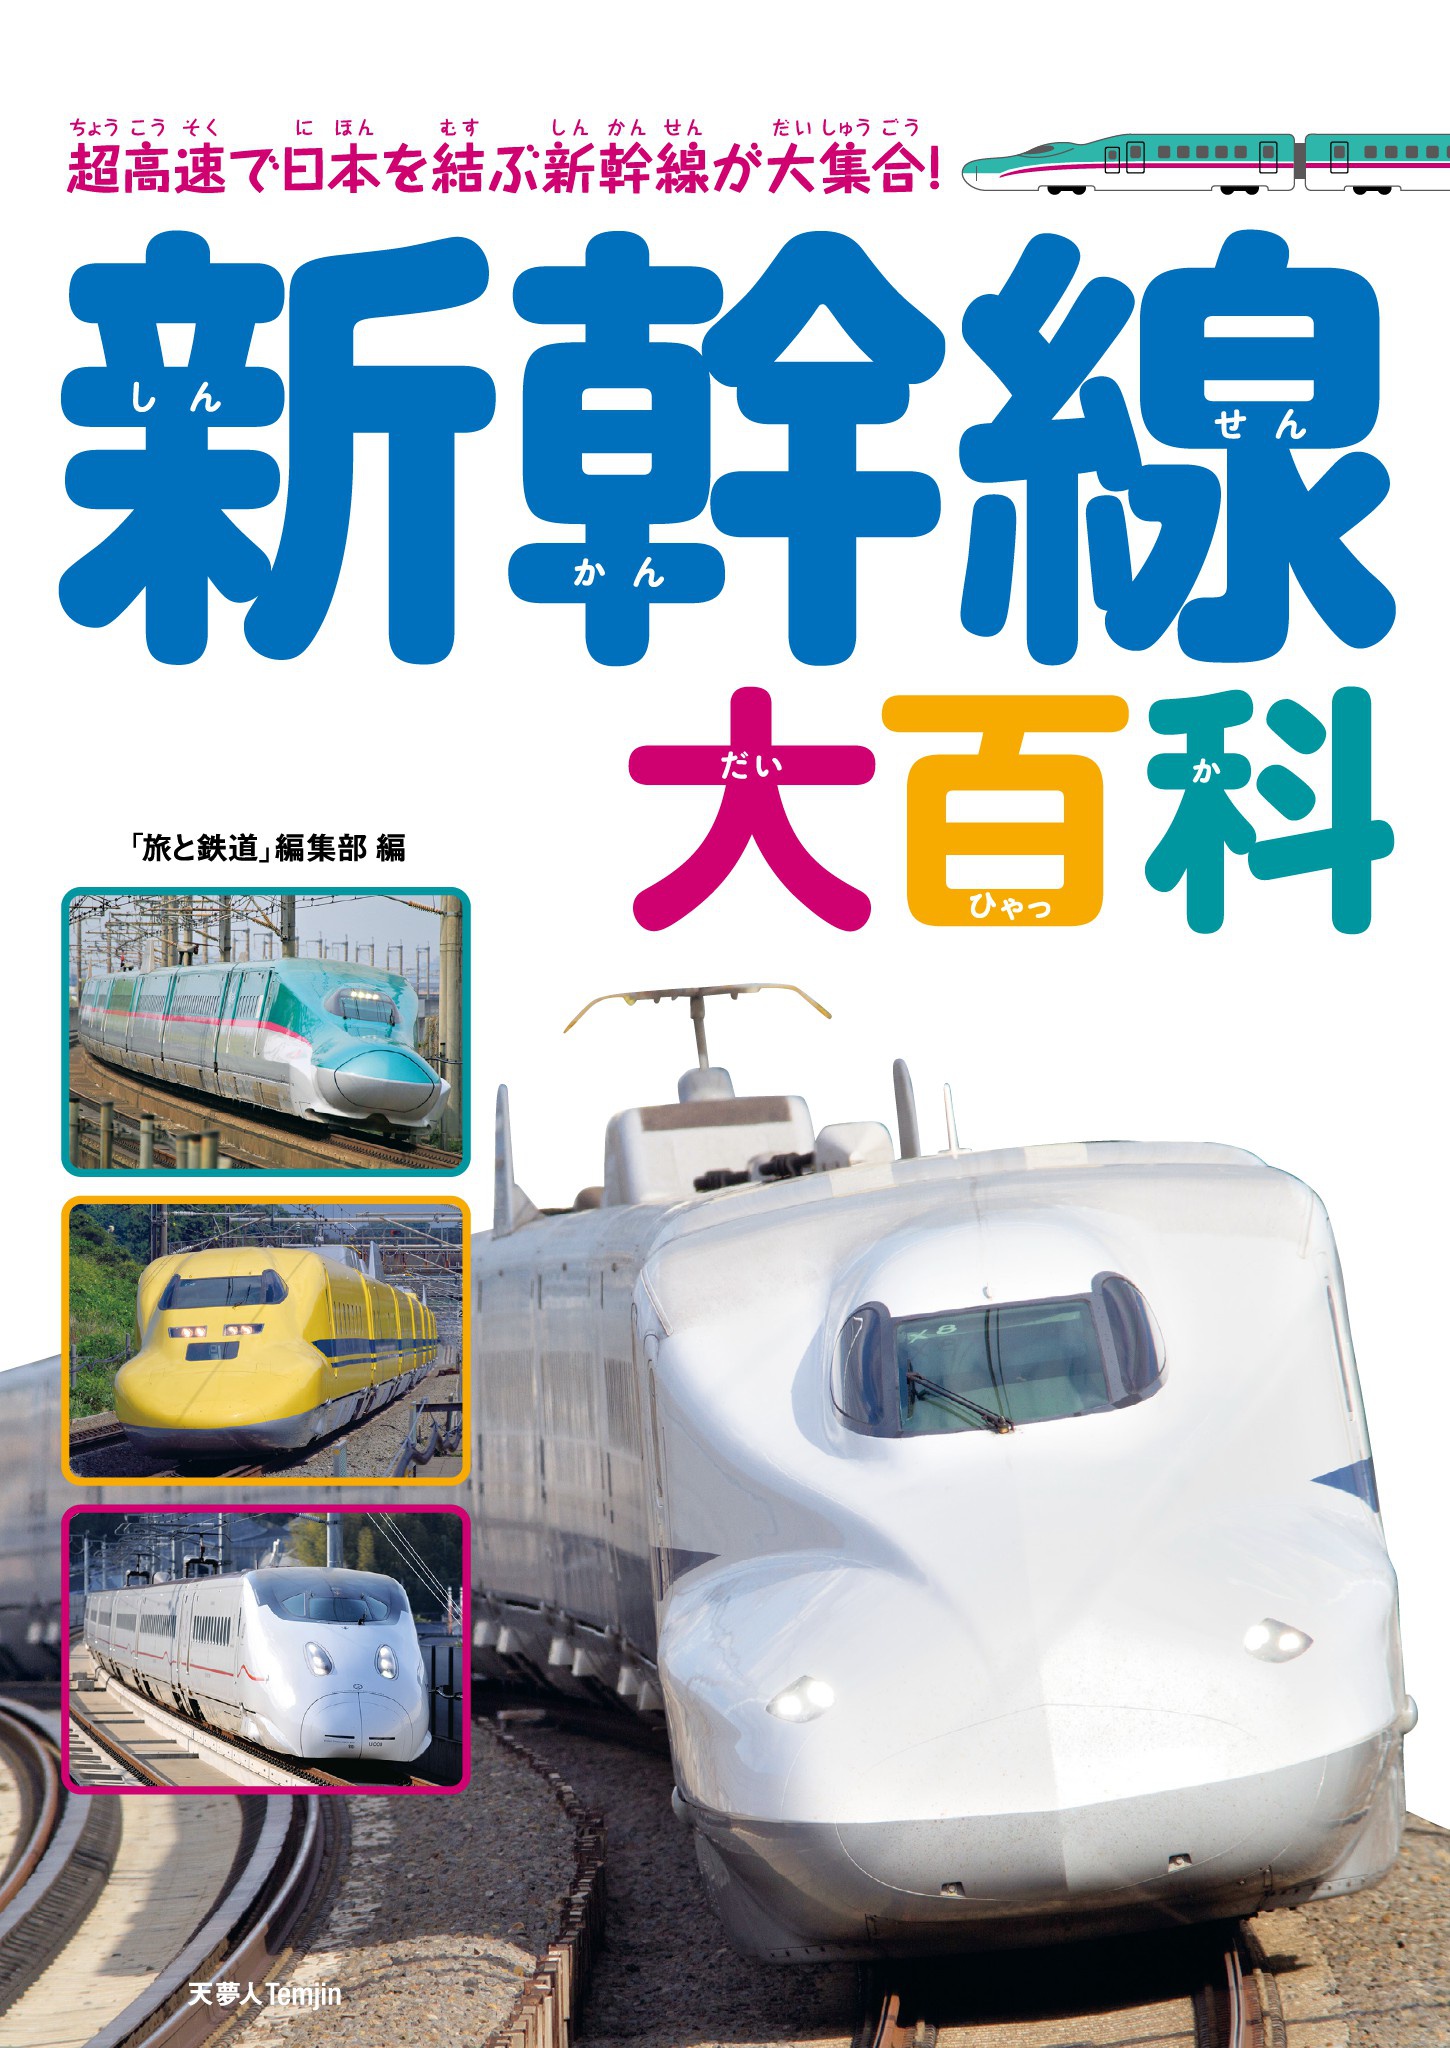 鉄道サウンド大百科/アナログレコード盤 【新作入荷!!】 49.0%割引